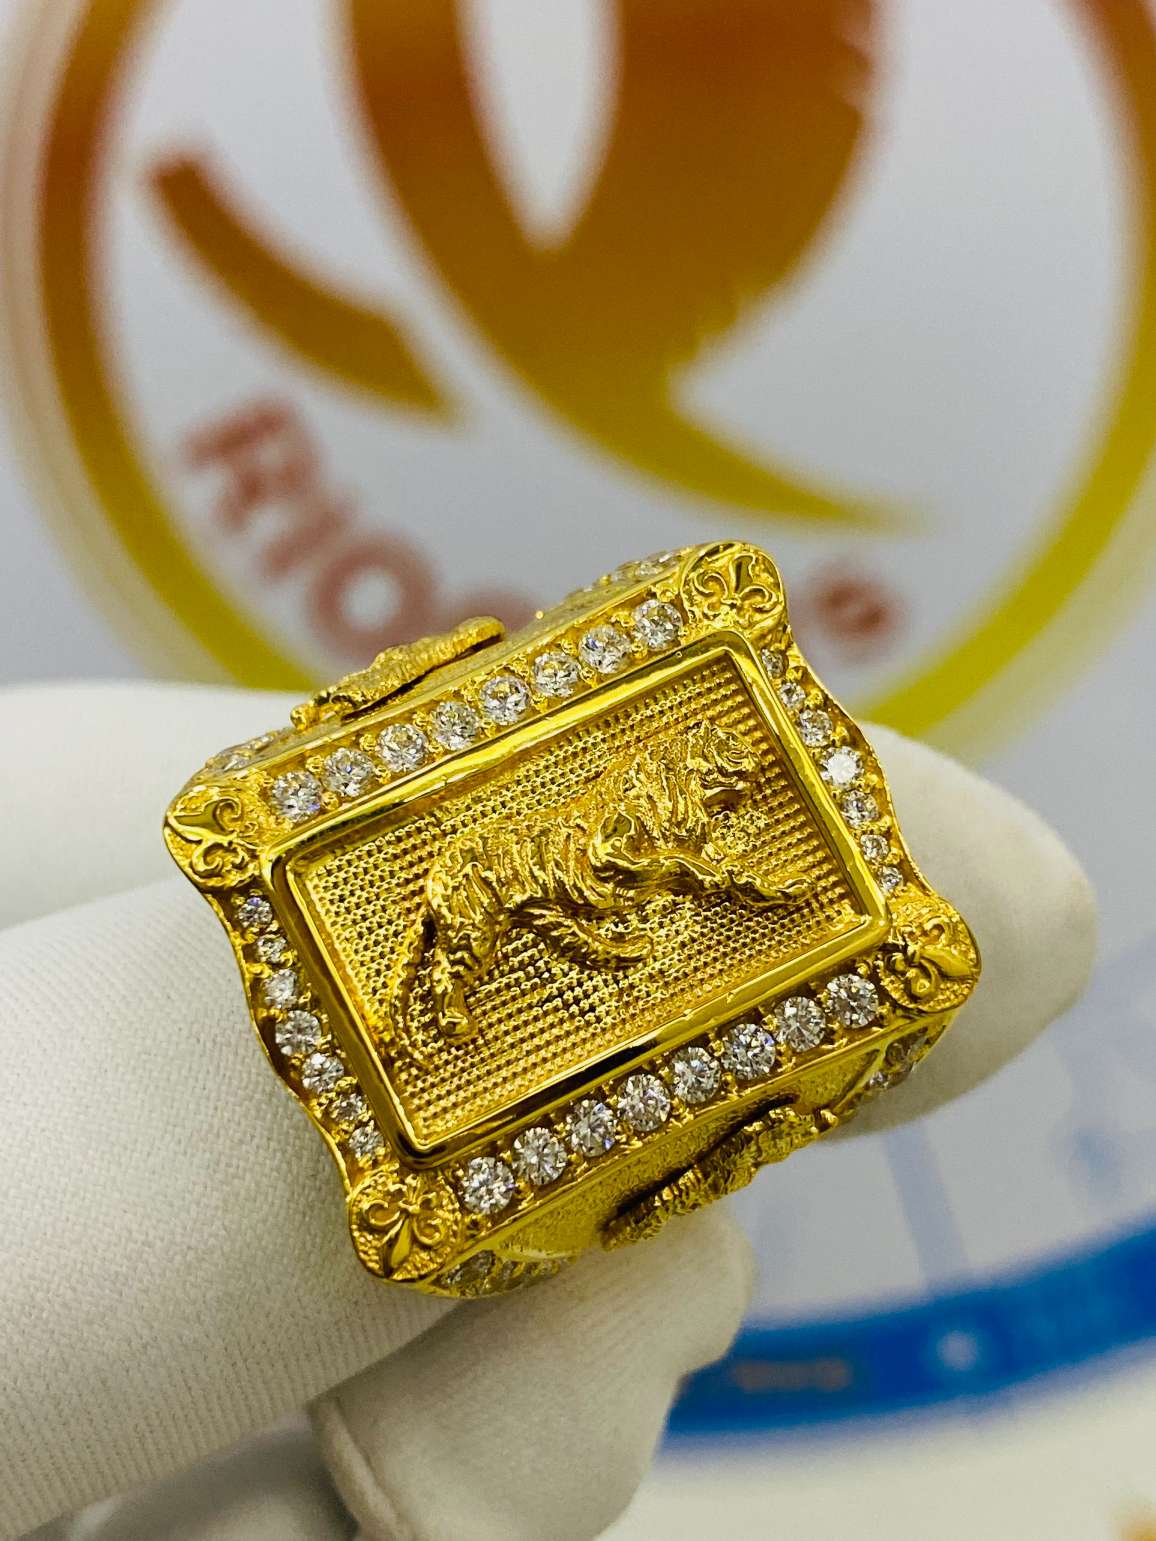 Nhẫn vàng 610 là gì? Giá nhẫn vàng 610 bao nhiêu tiền?